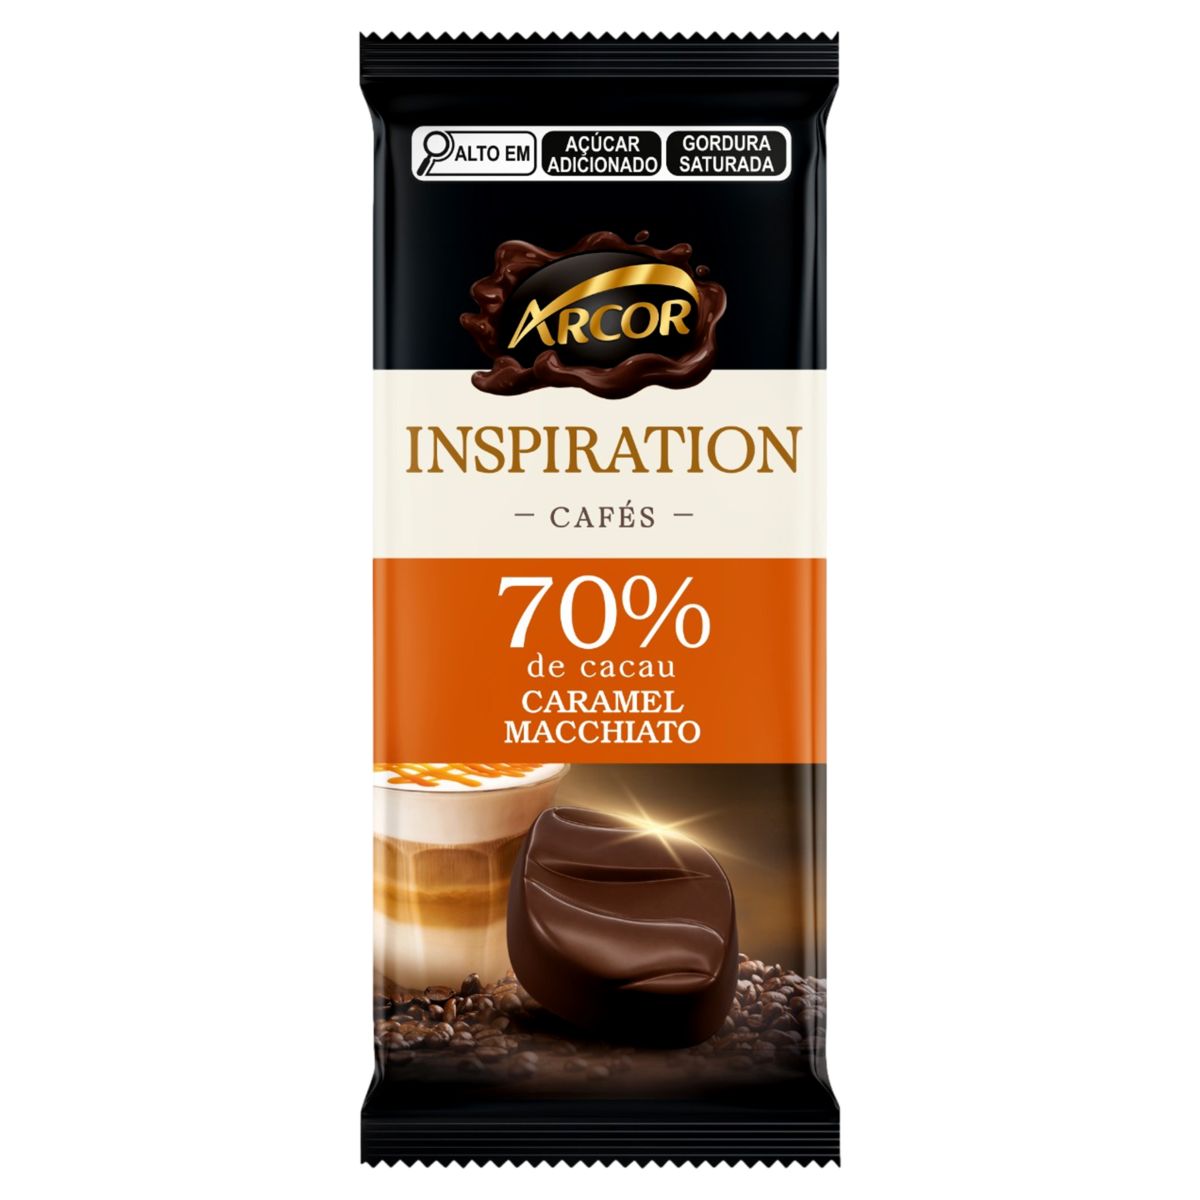 Chocolate Arcor Inspiration Cafés 70% Cacau Caramel Macchiato 80g